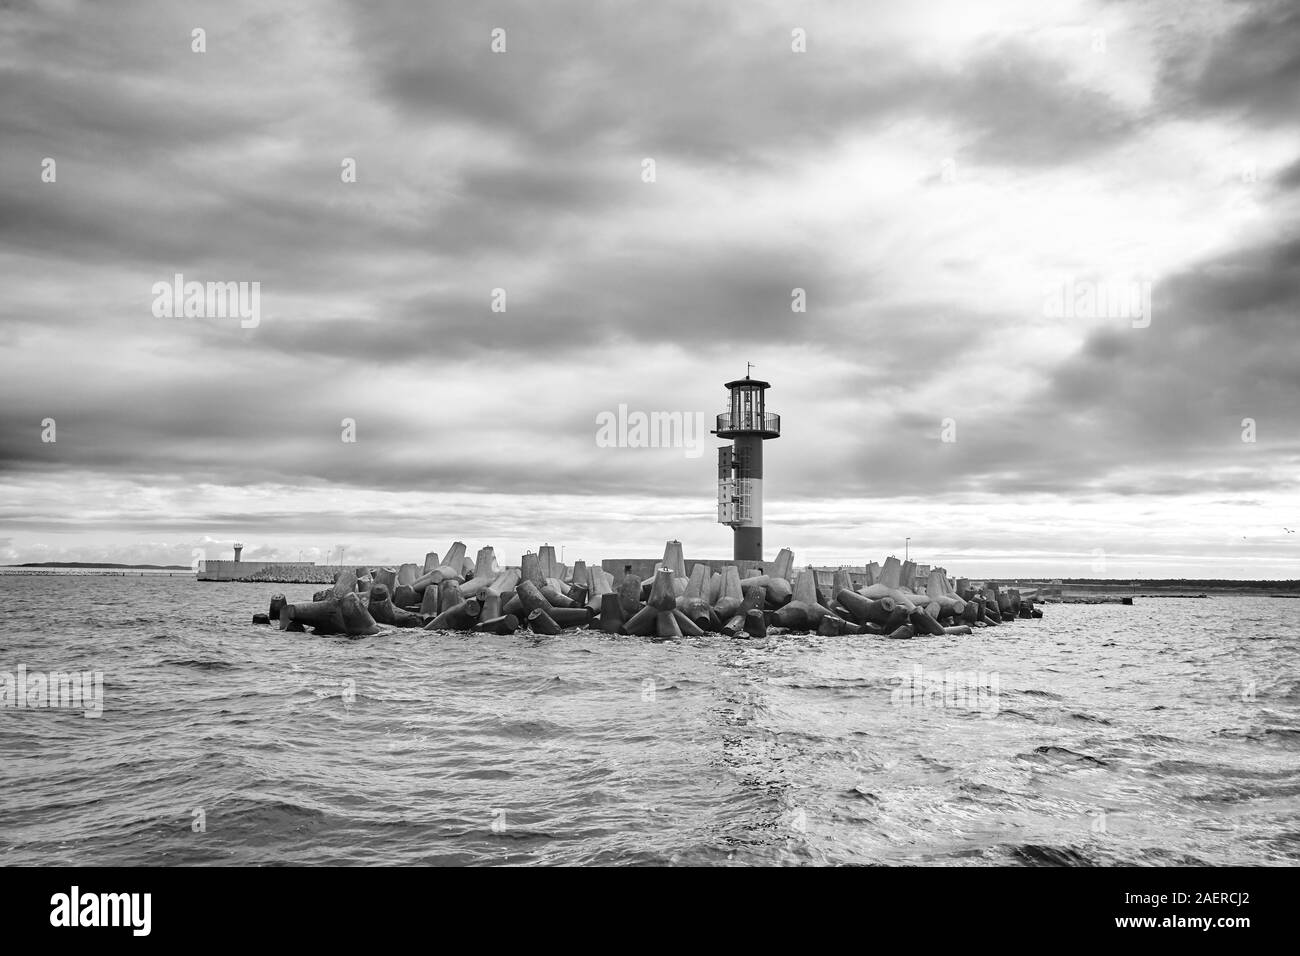 Immagine in bianco e nero di un faro sul mare con nuvole temporalesche. Foto Stock